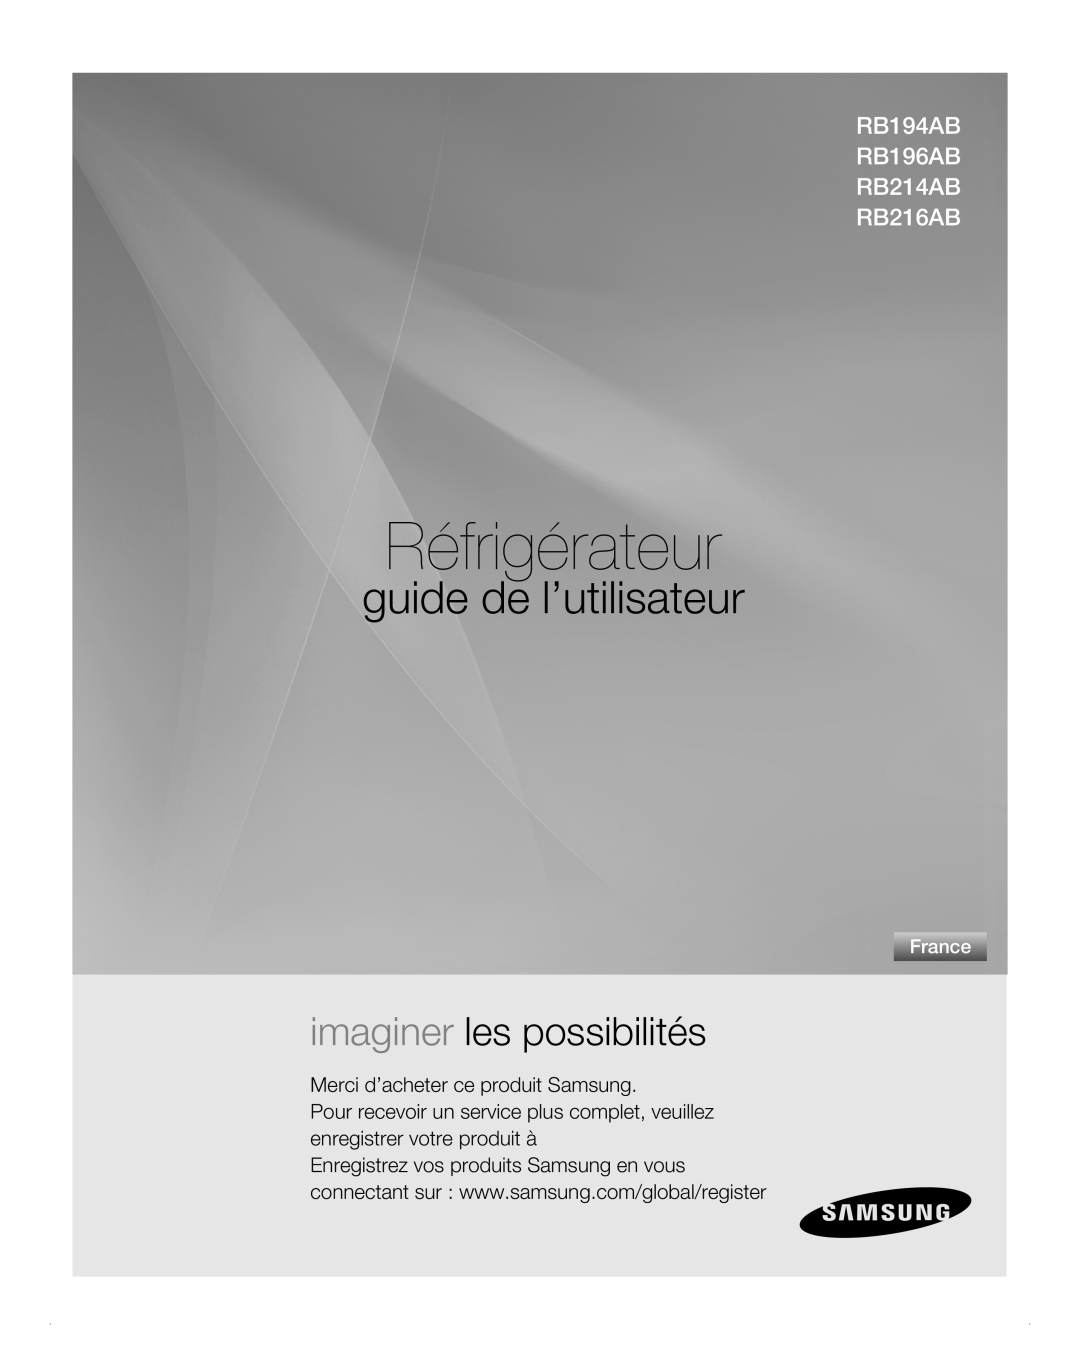 Samsung RB216AB, RB194AB, RB214AB manual Merci d’acheter ce produit Samsung, Réfrigérateur, guide de l’utilisateur, France 